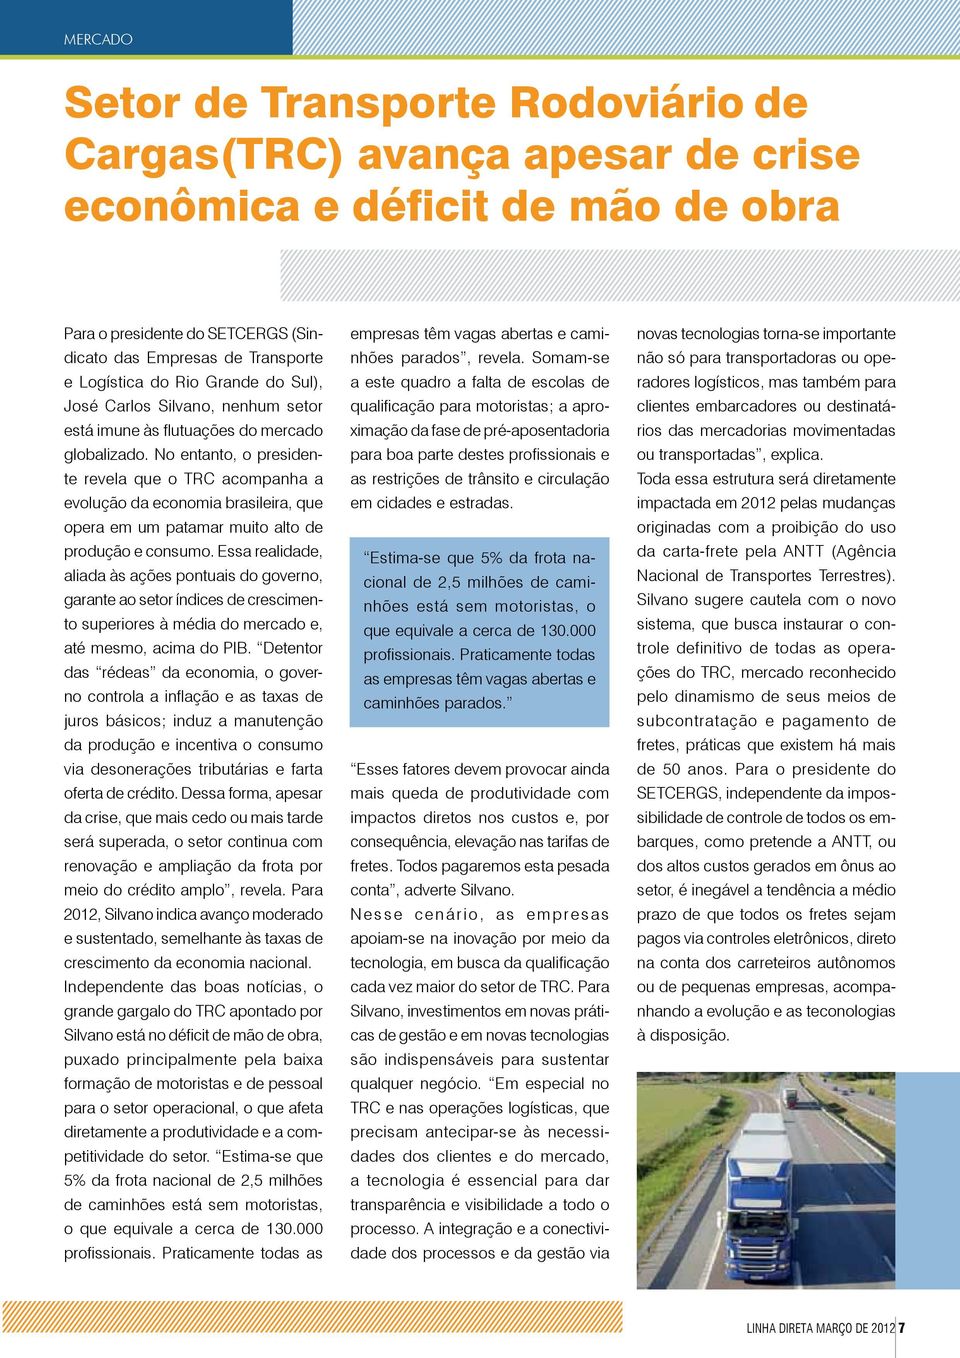 No entanto, o presidente revela que o TRC acompanha a evolução da economia brasileira, que opera em um patamar muito alto de produção e consumo.